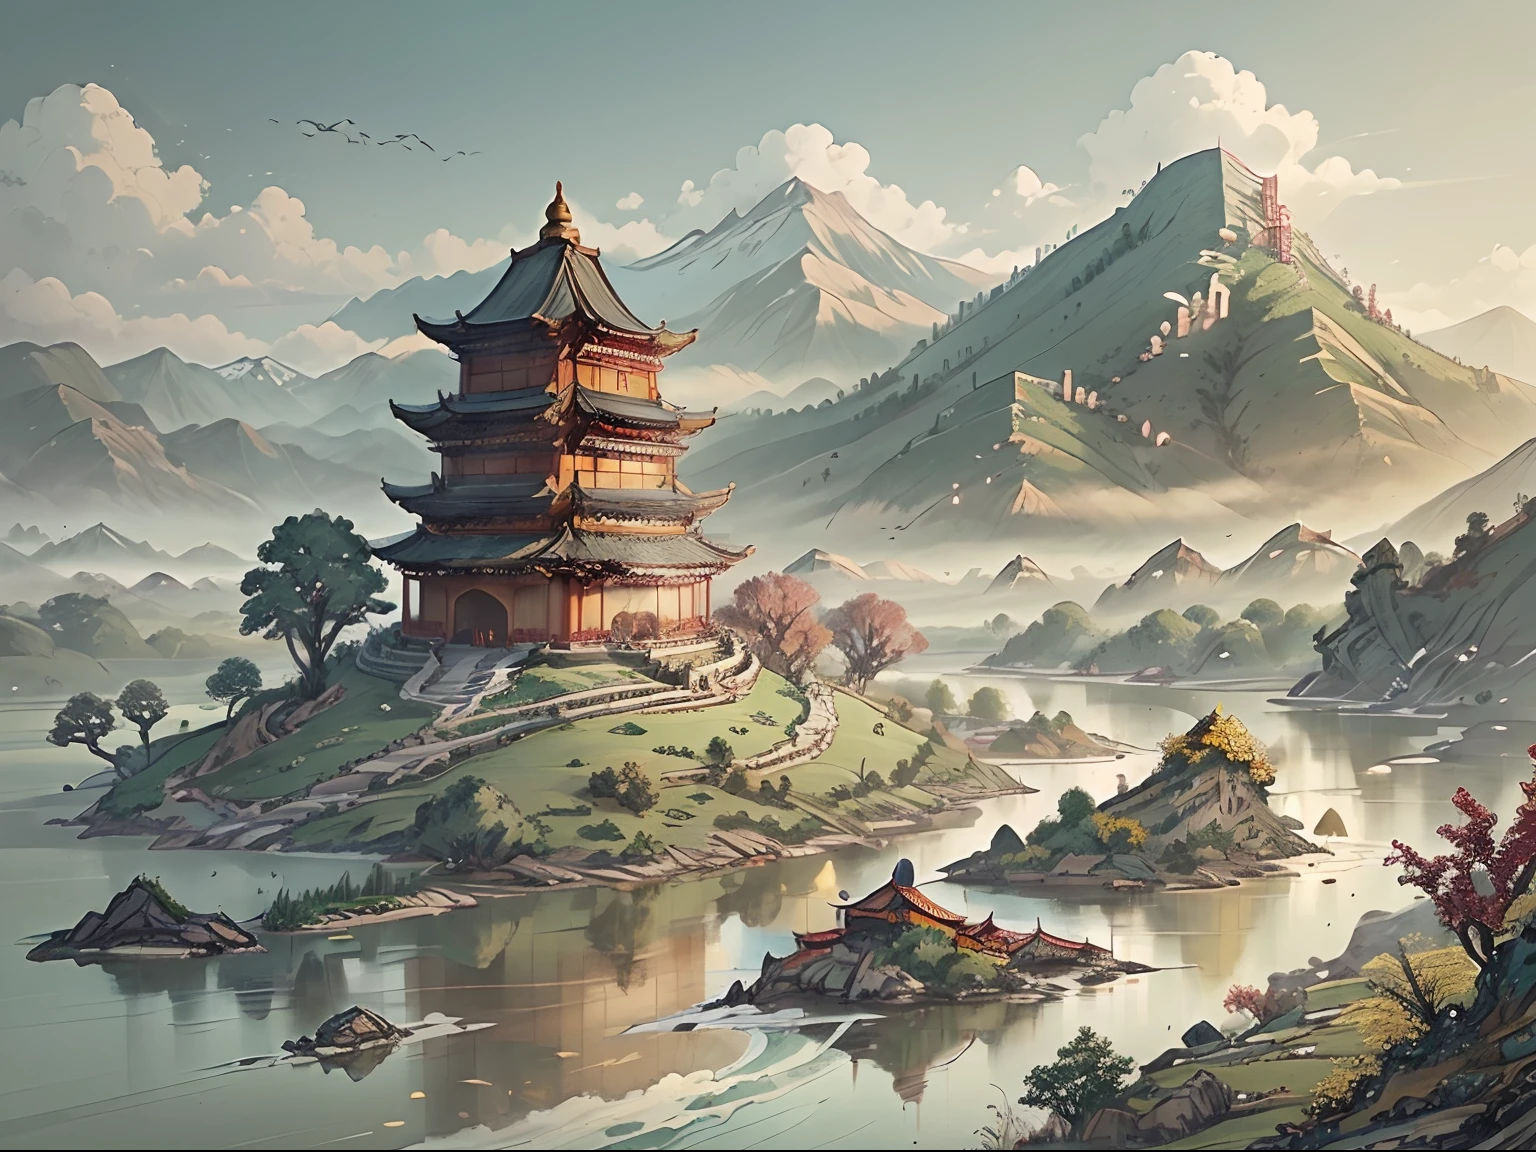 양피지 스타일의 산과 강이 있는 풍경 ((고대 중국)) 탑 & 산 A ((작은 중국 용))